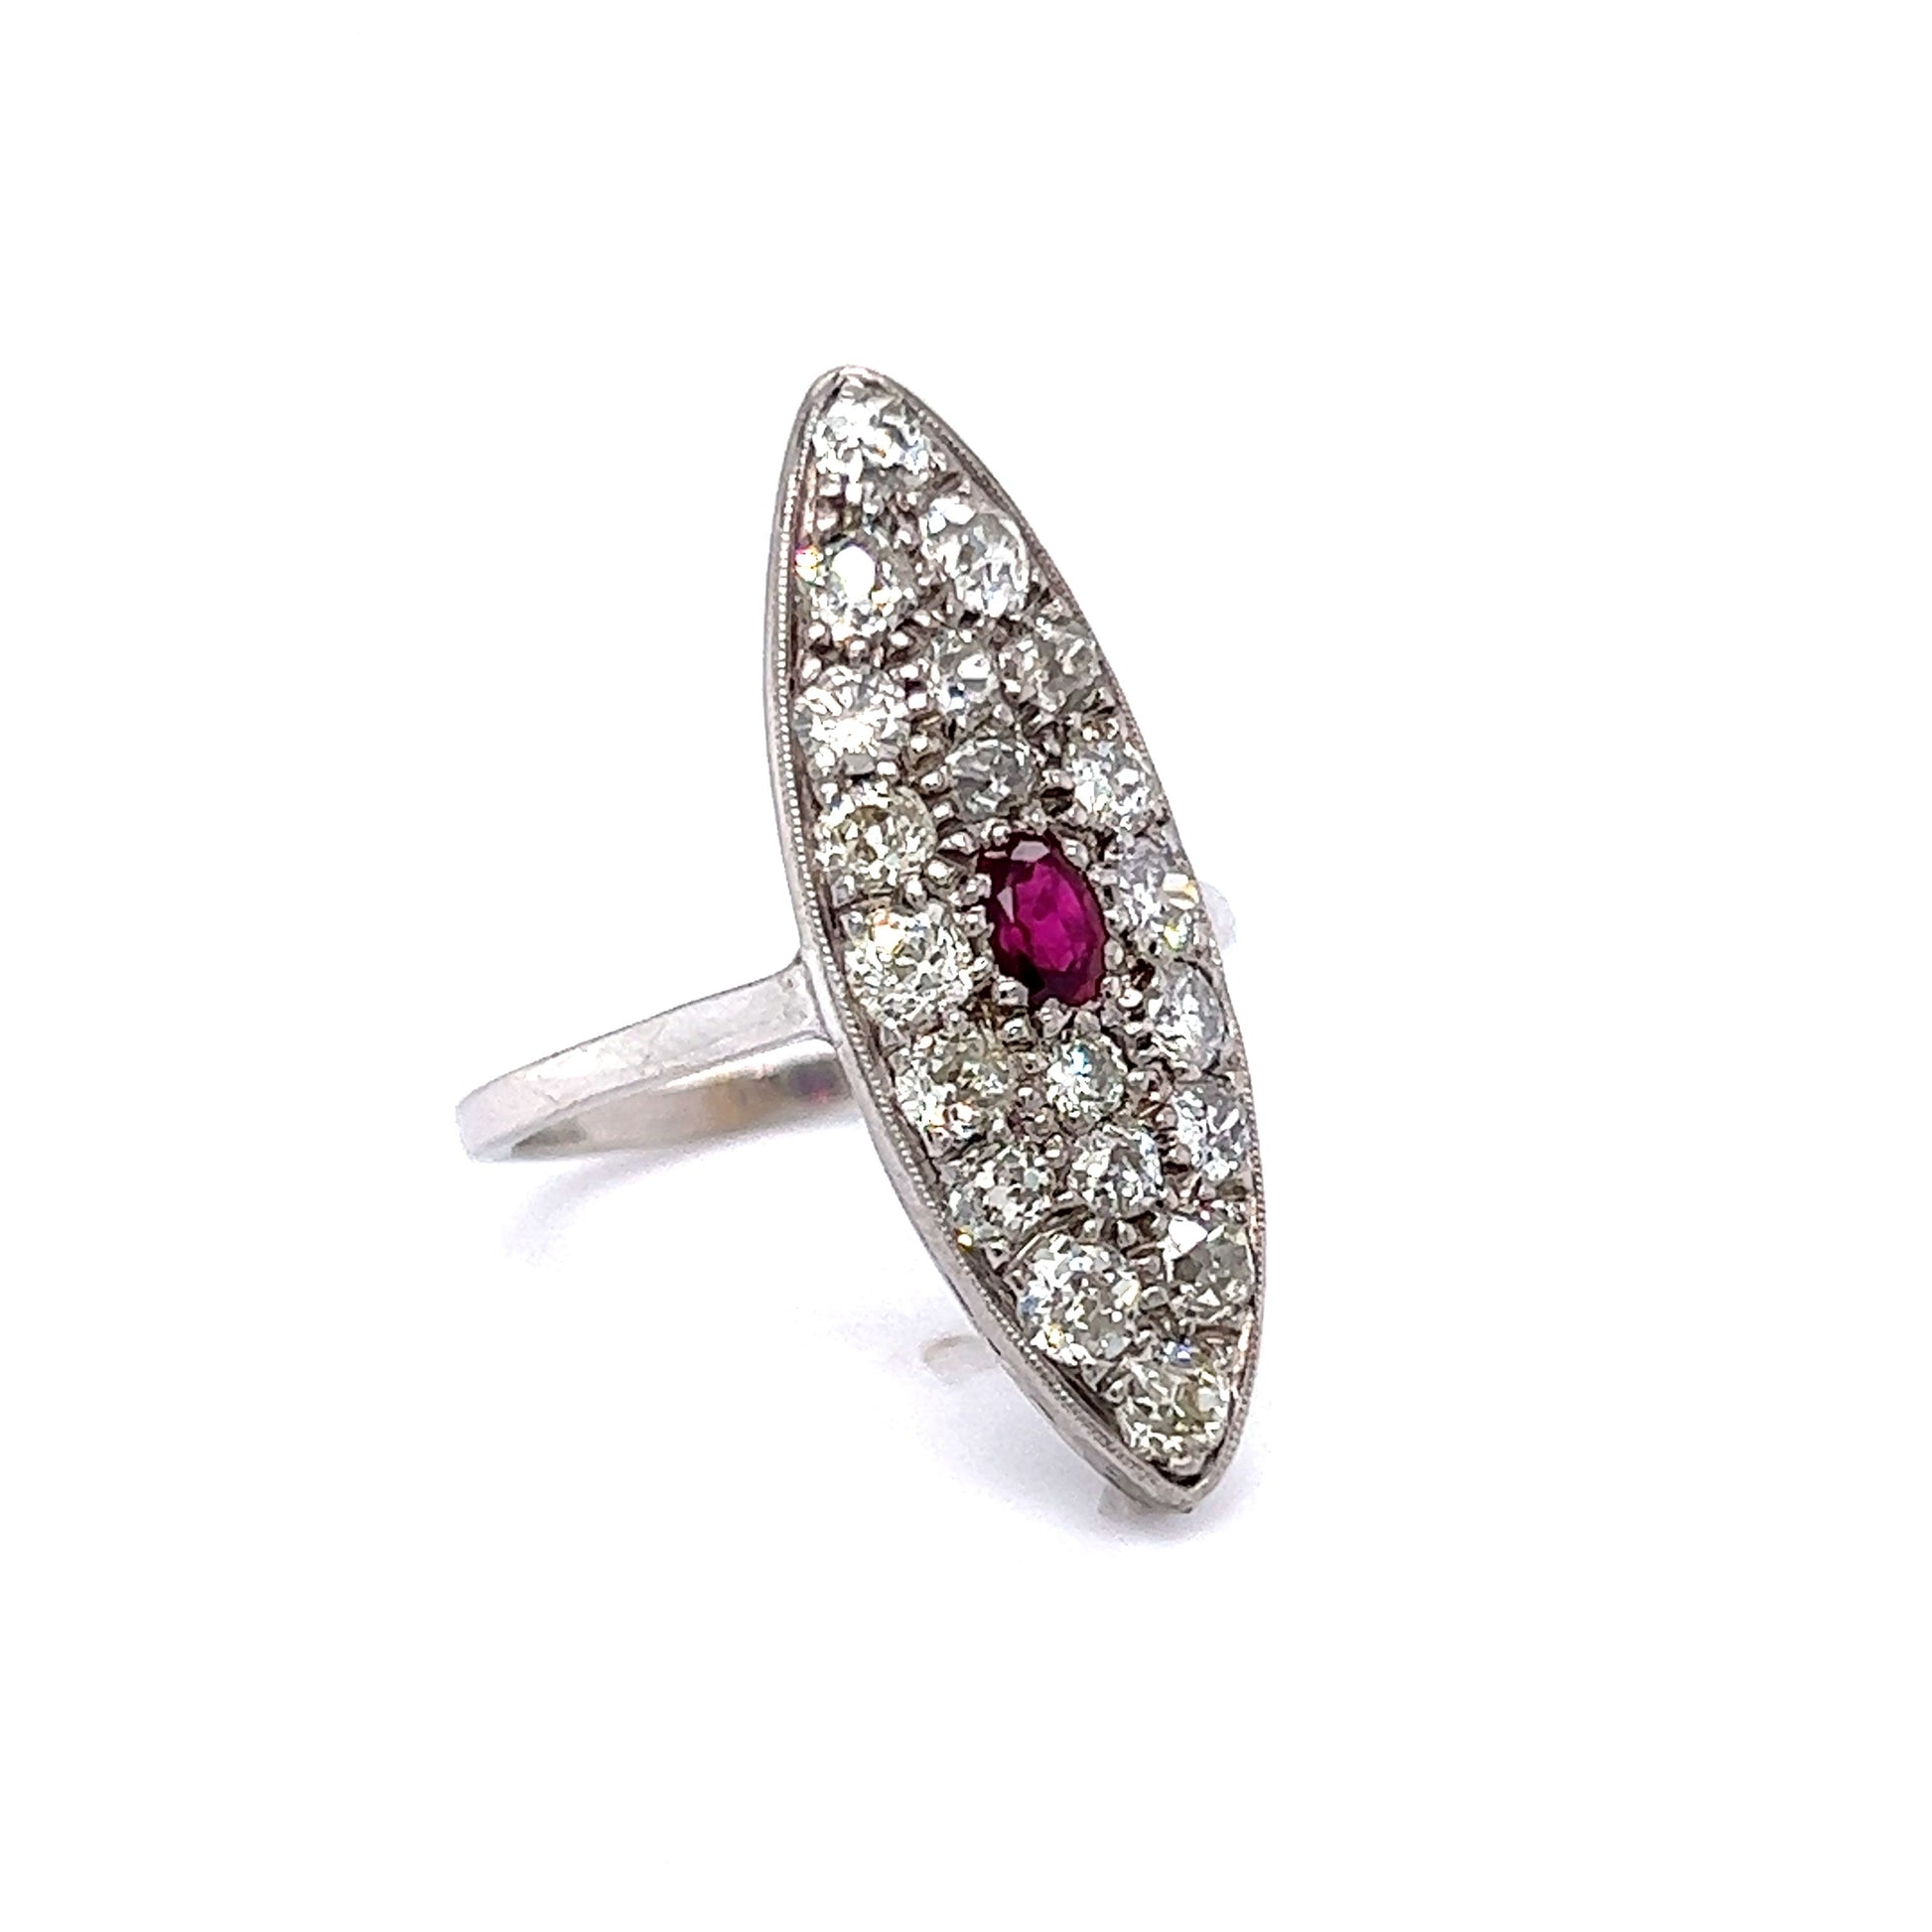 Edwardian Diamond w/ Ruby Navette Ring in 14K